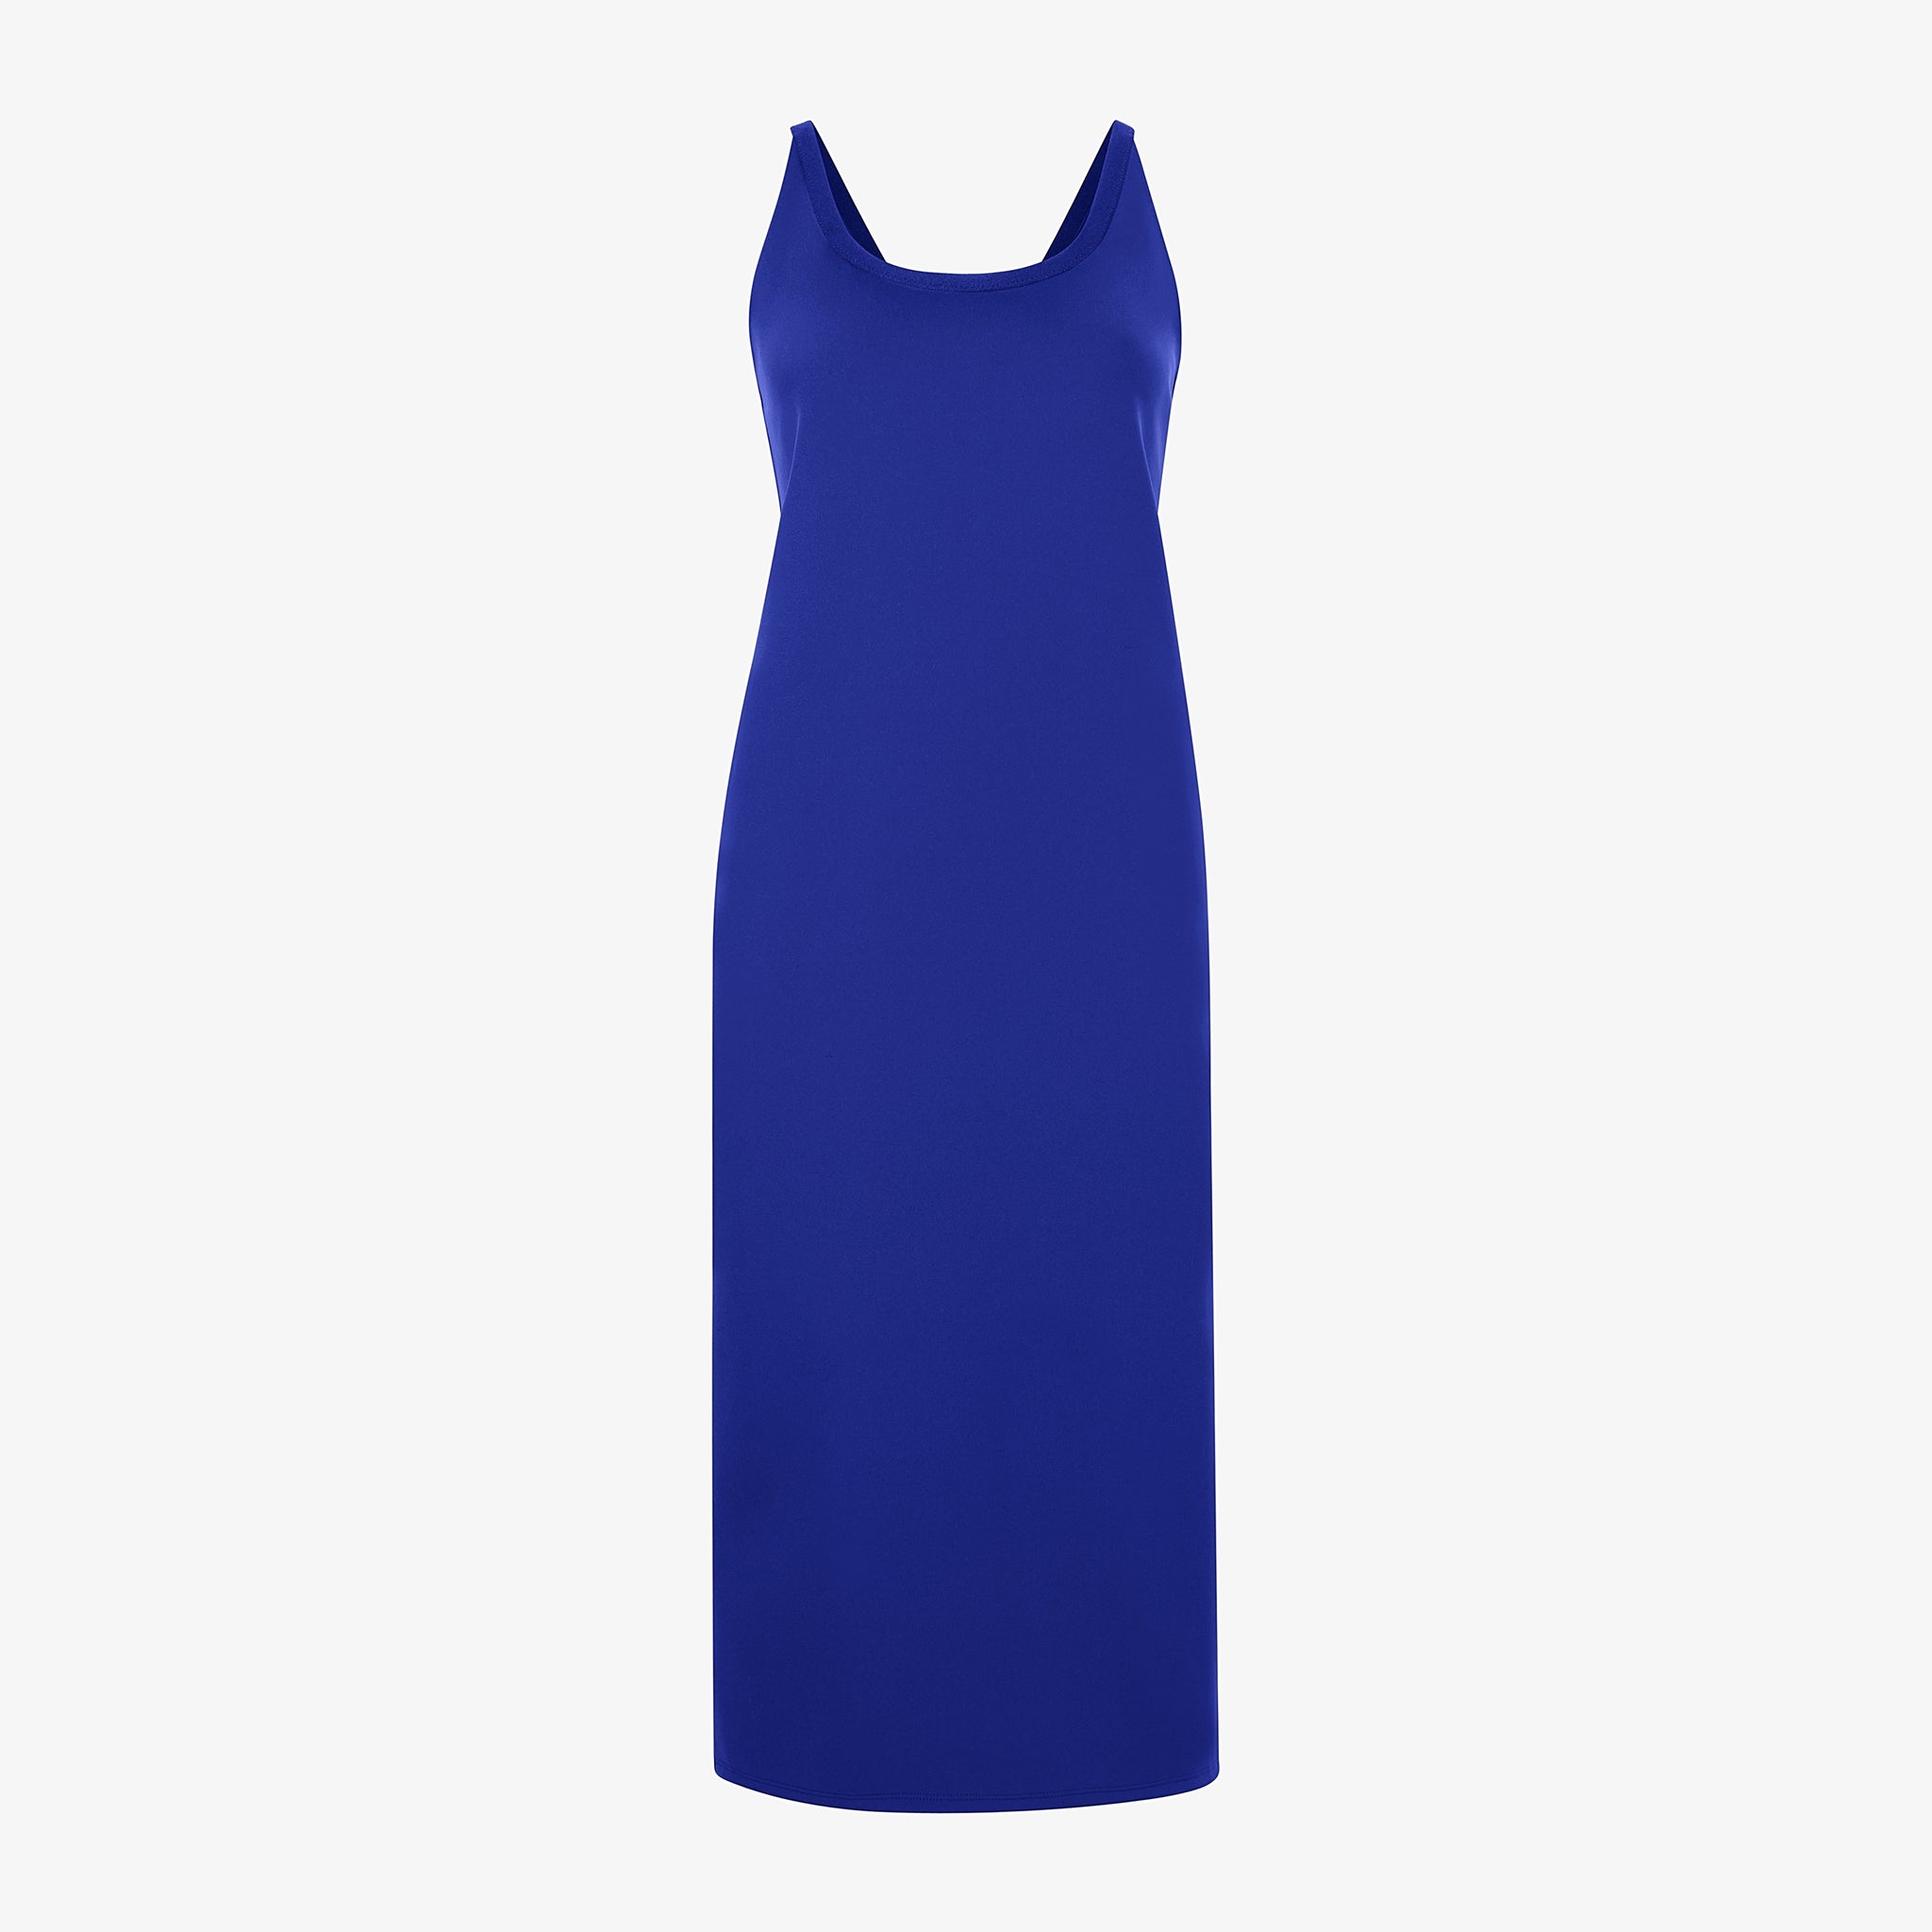 Packshot image of the elsa dress in electric blue 